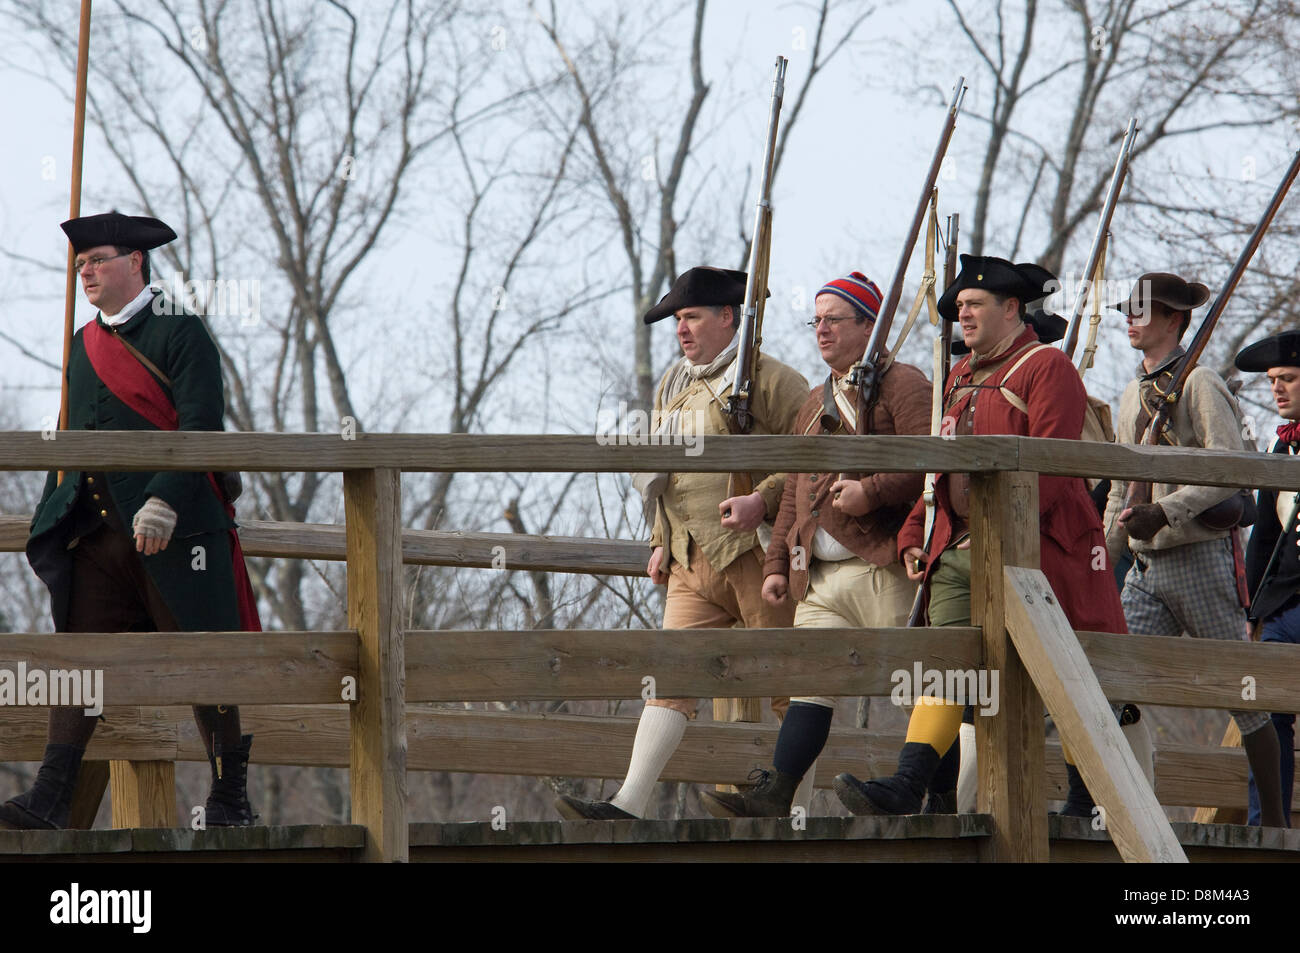 Minutemen recreacions cruzando el Puente de Concord a harrass la retirada británica. Fotografía Digital. Foto de stock